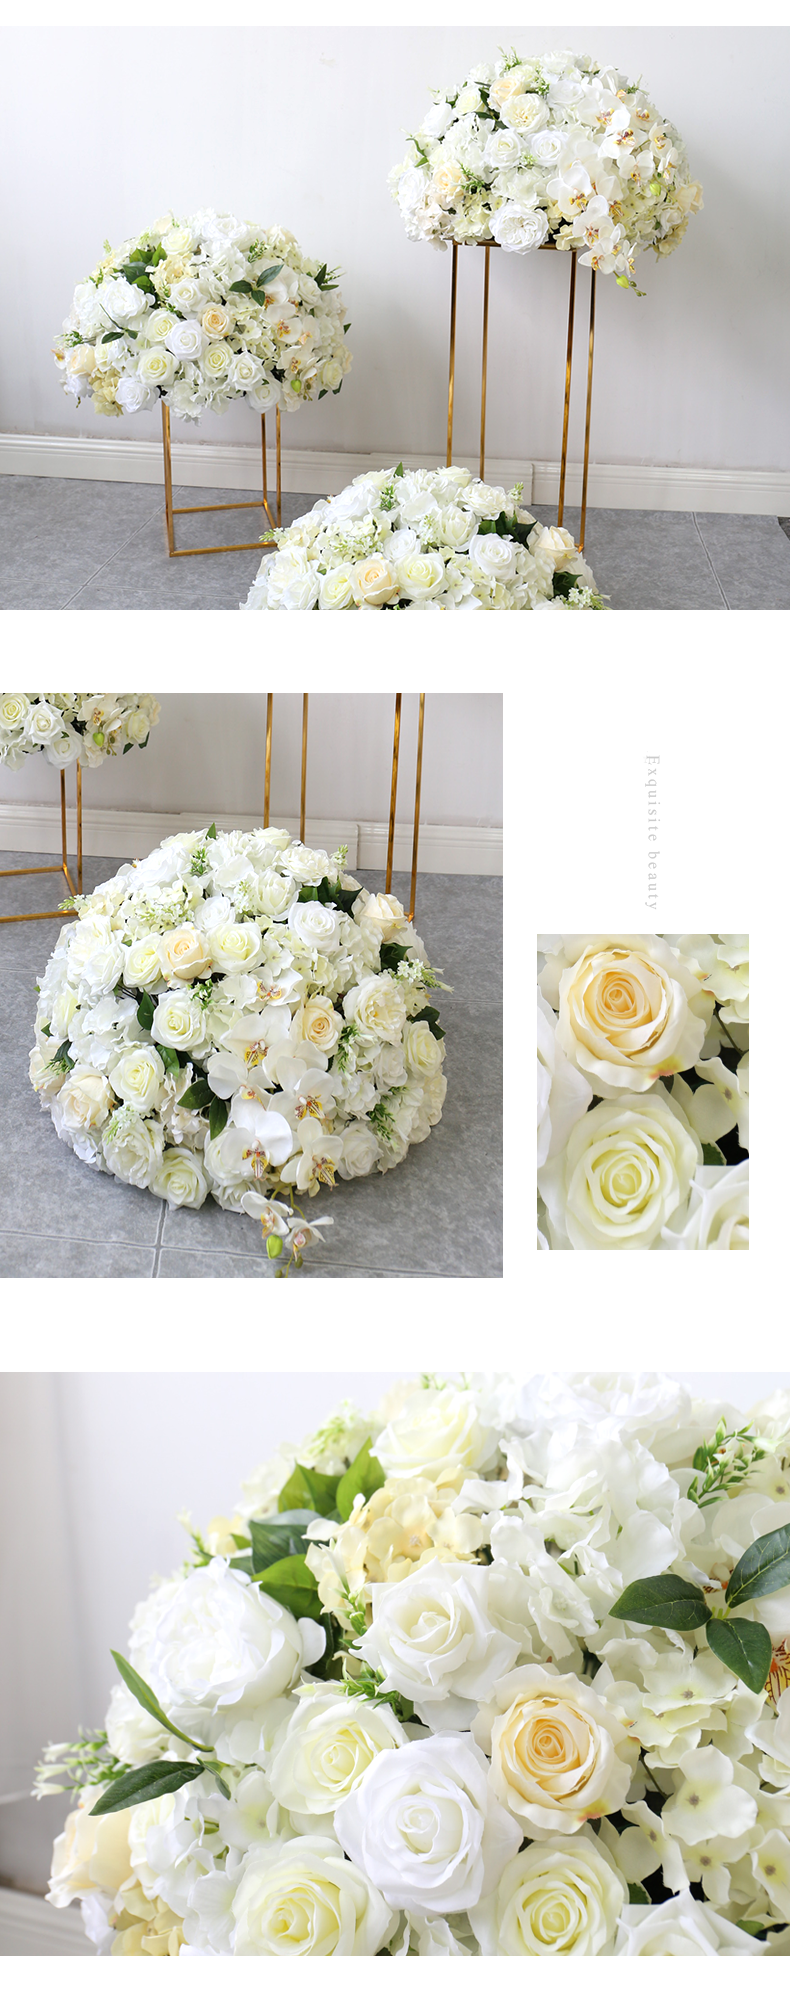  Bola de flores brancas artificiais para decoração de casamento 